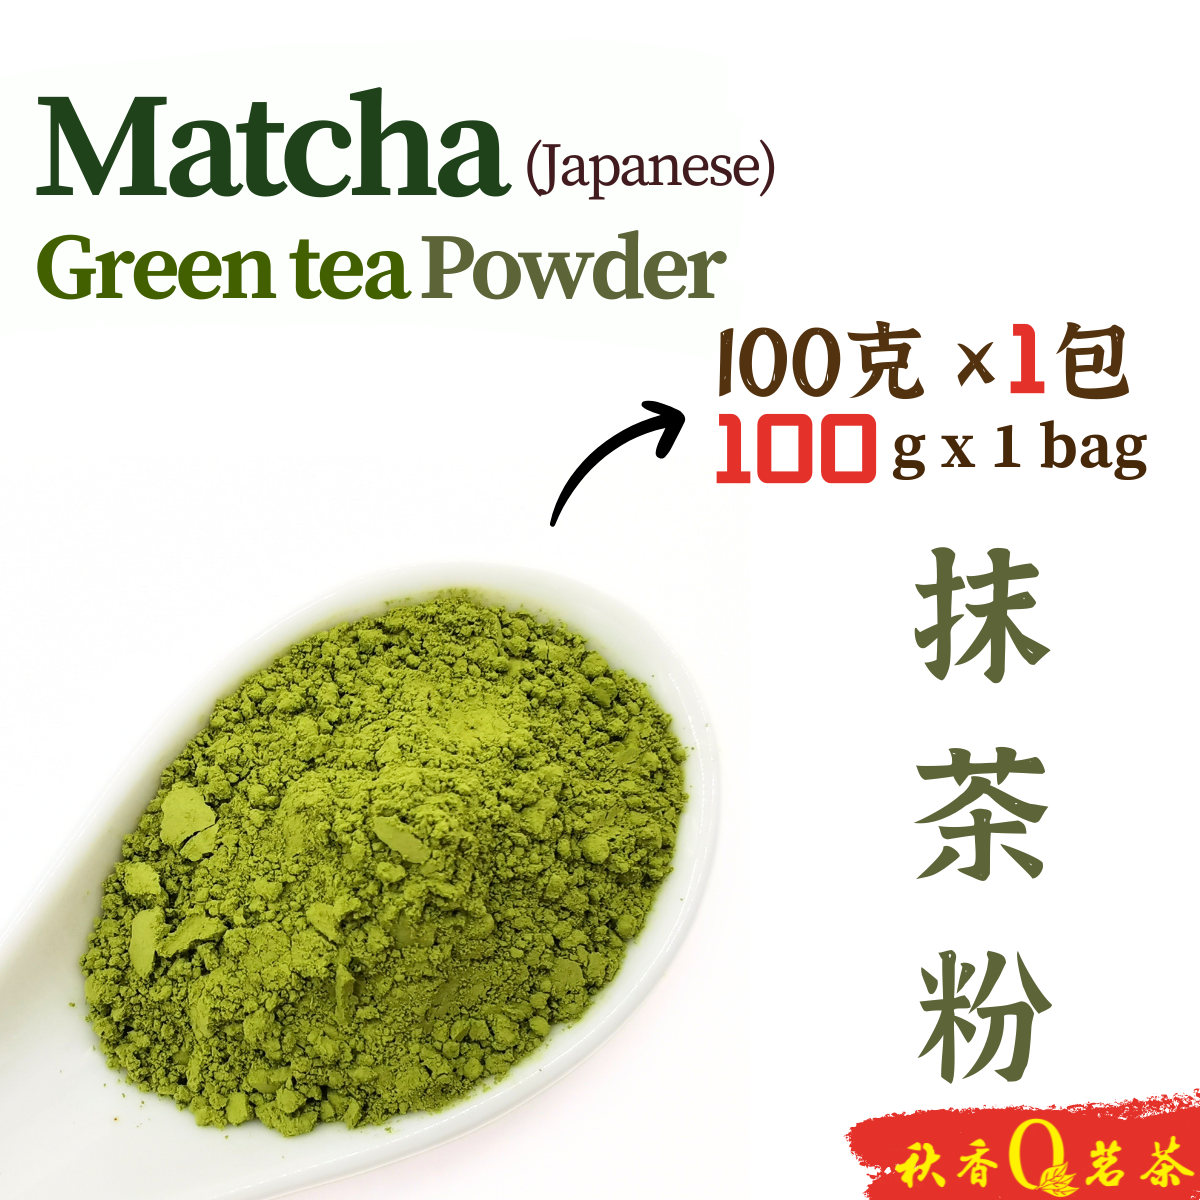 日本抹茶粉 Japanese Matcha Green tea Powder【100g】|【绿茶 Green tea】